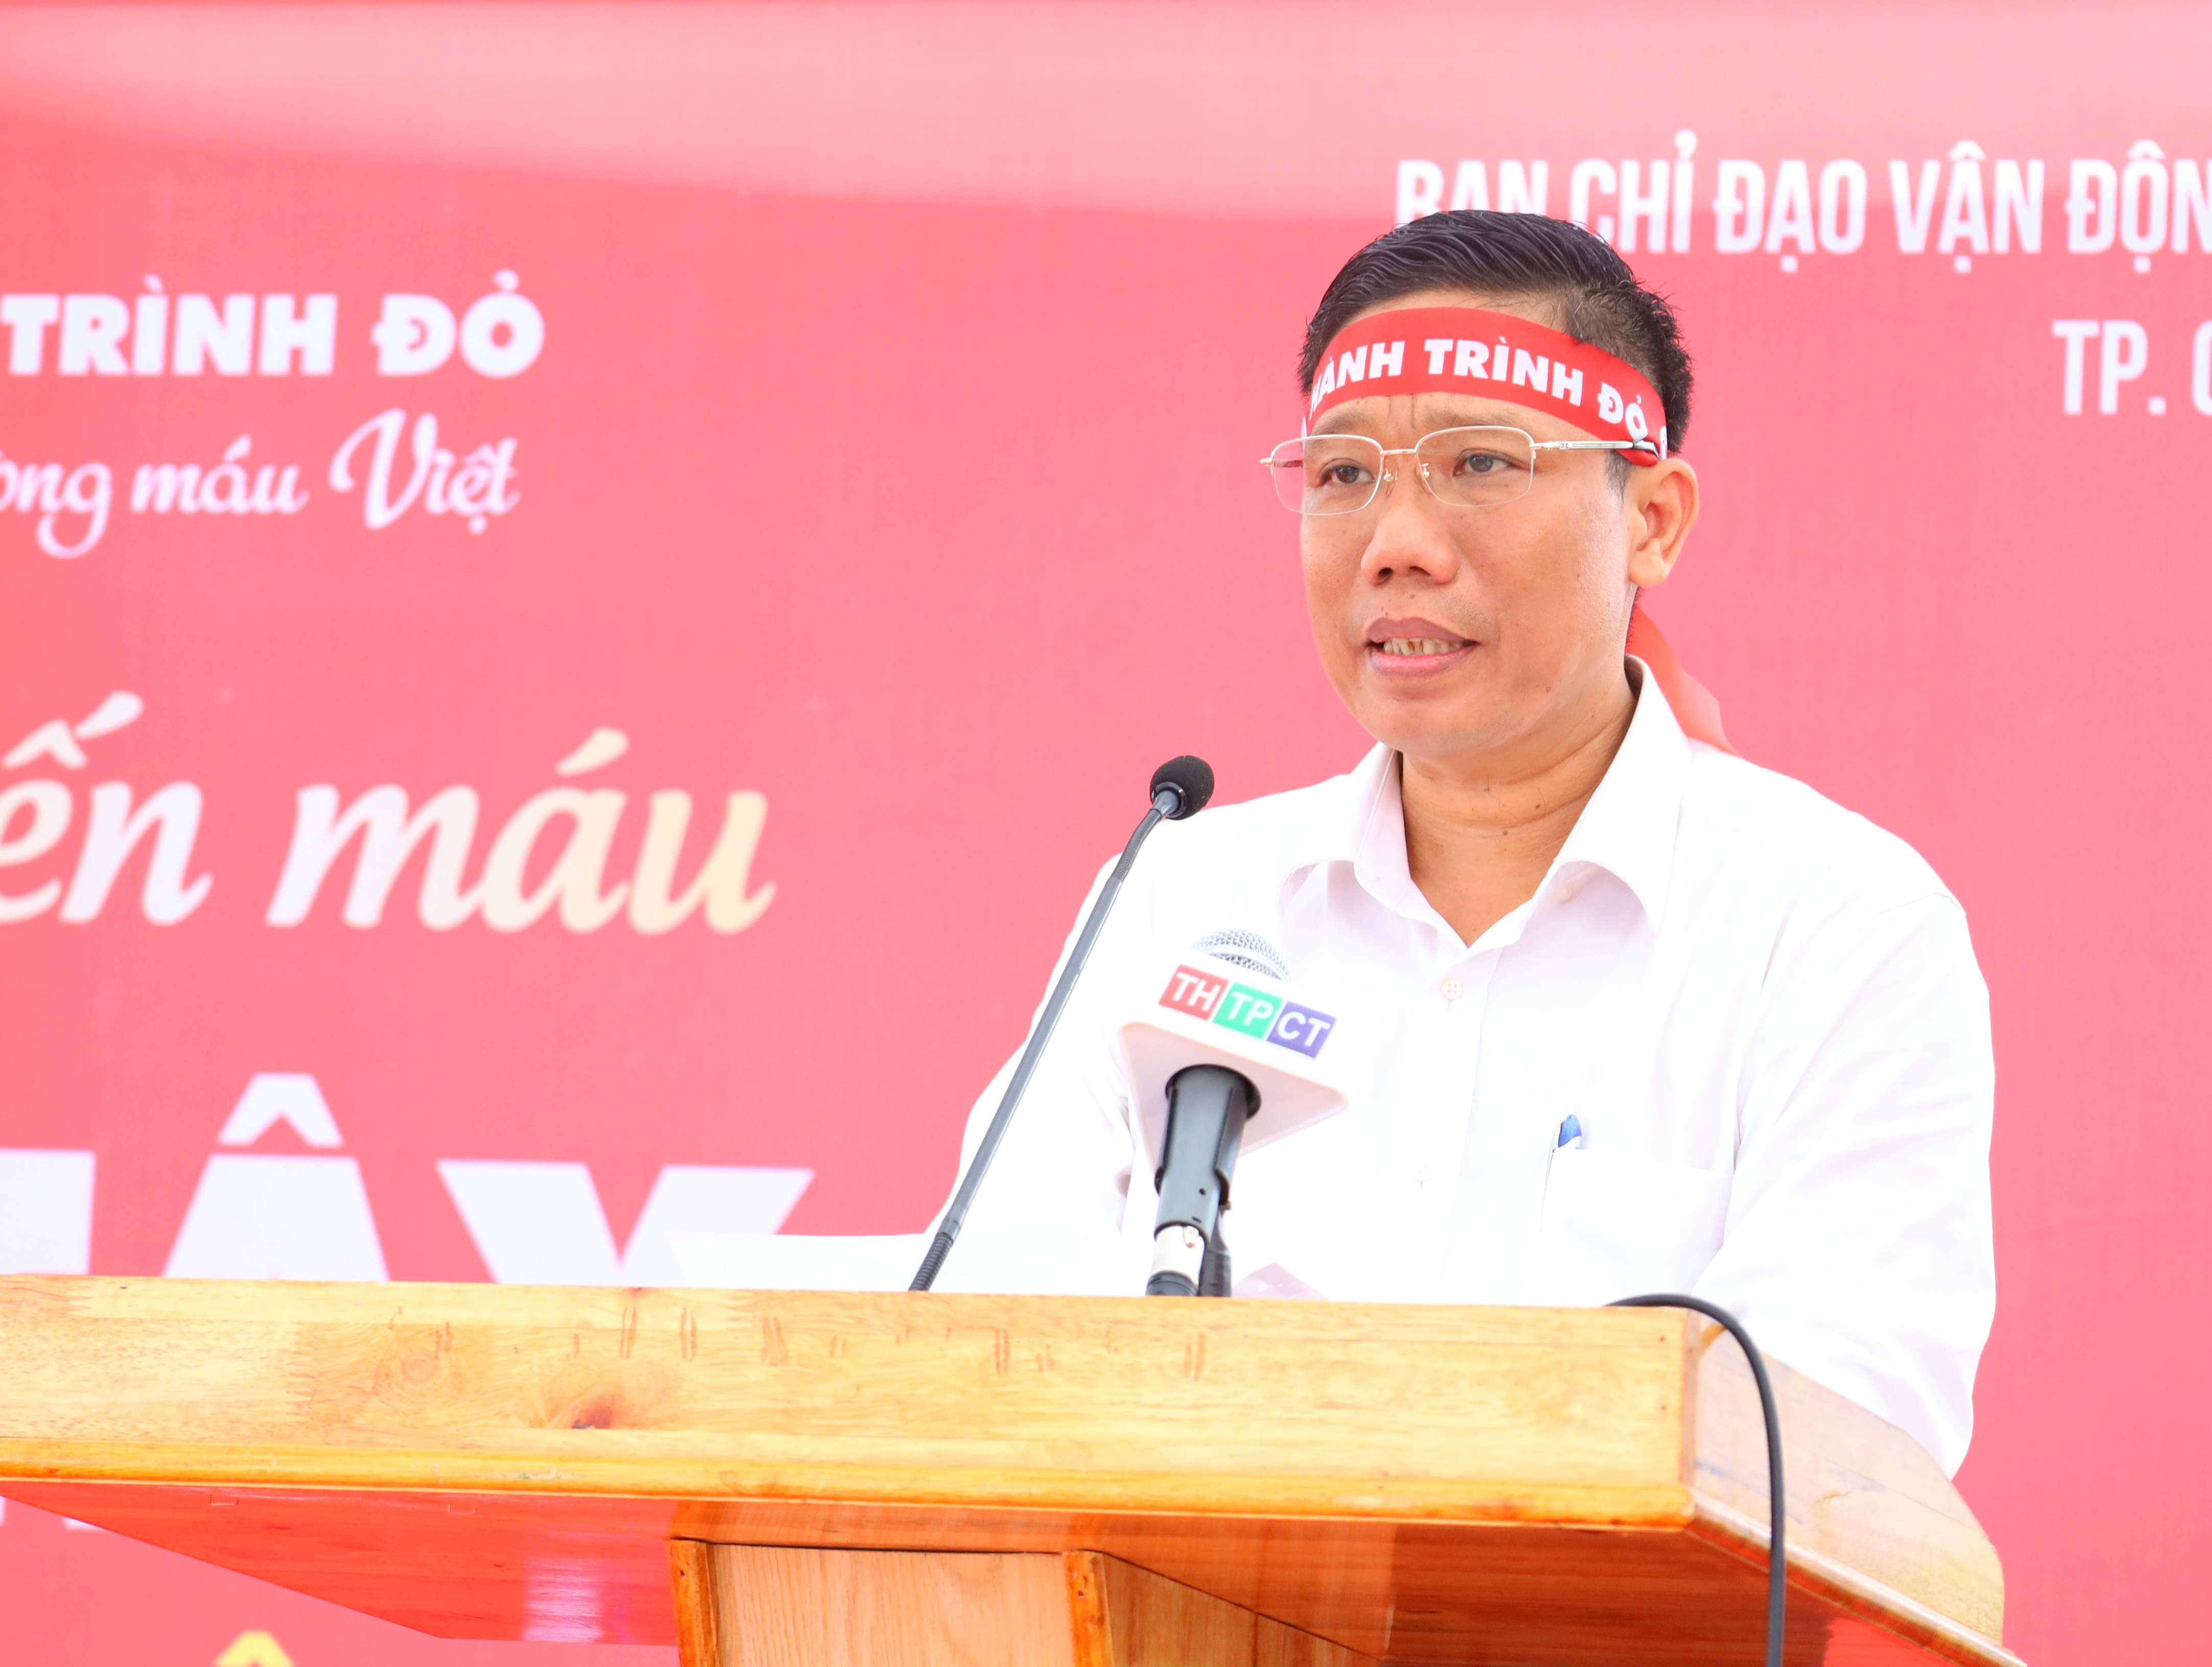 Ông Nguyễn Thực Hiện – Phó Chủ tịch UBND TP. Cần Thơ phát biểu chao mừng tại chương trình.